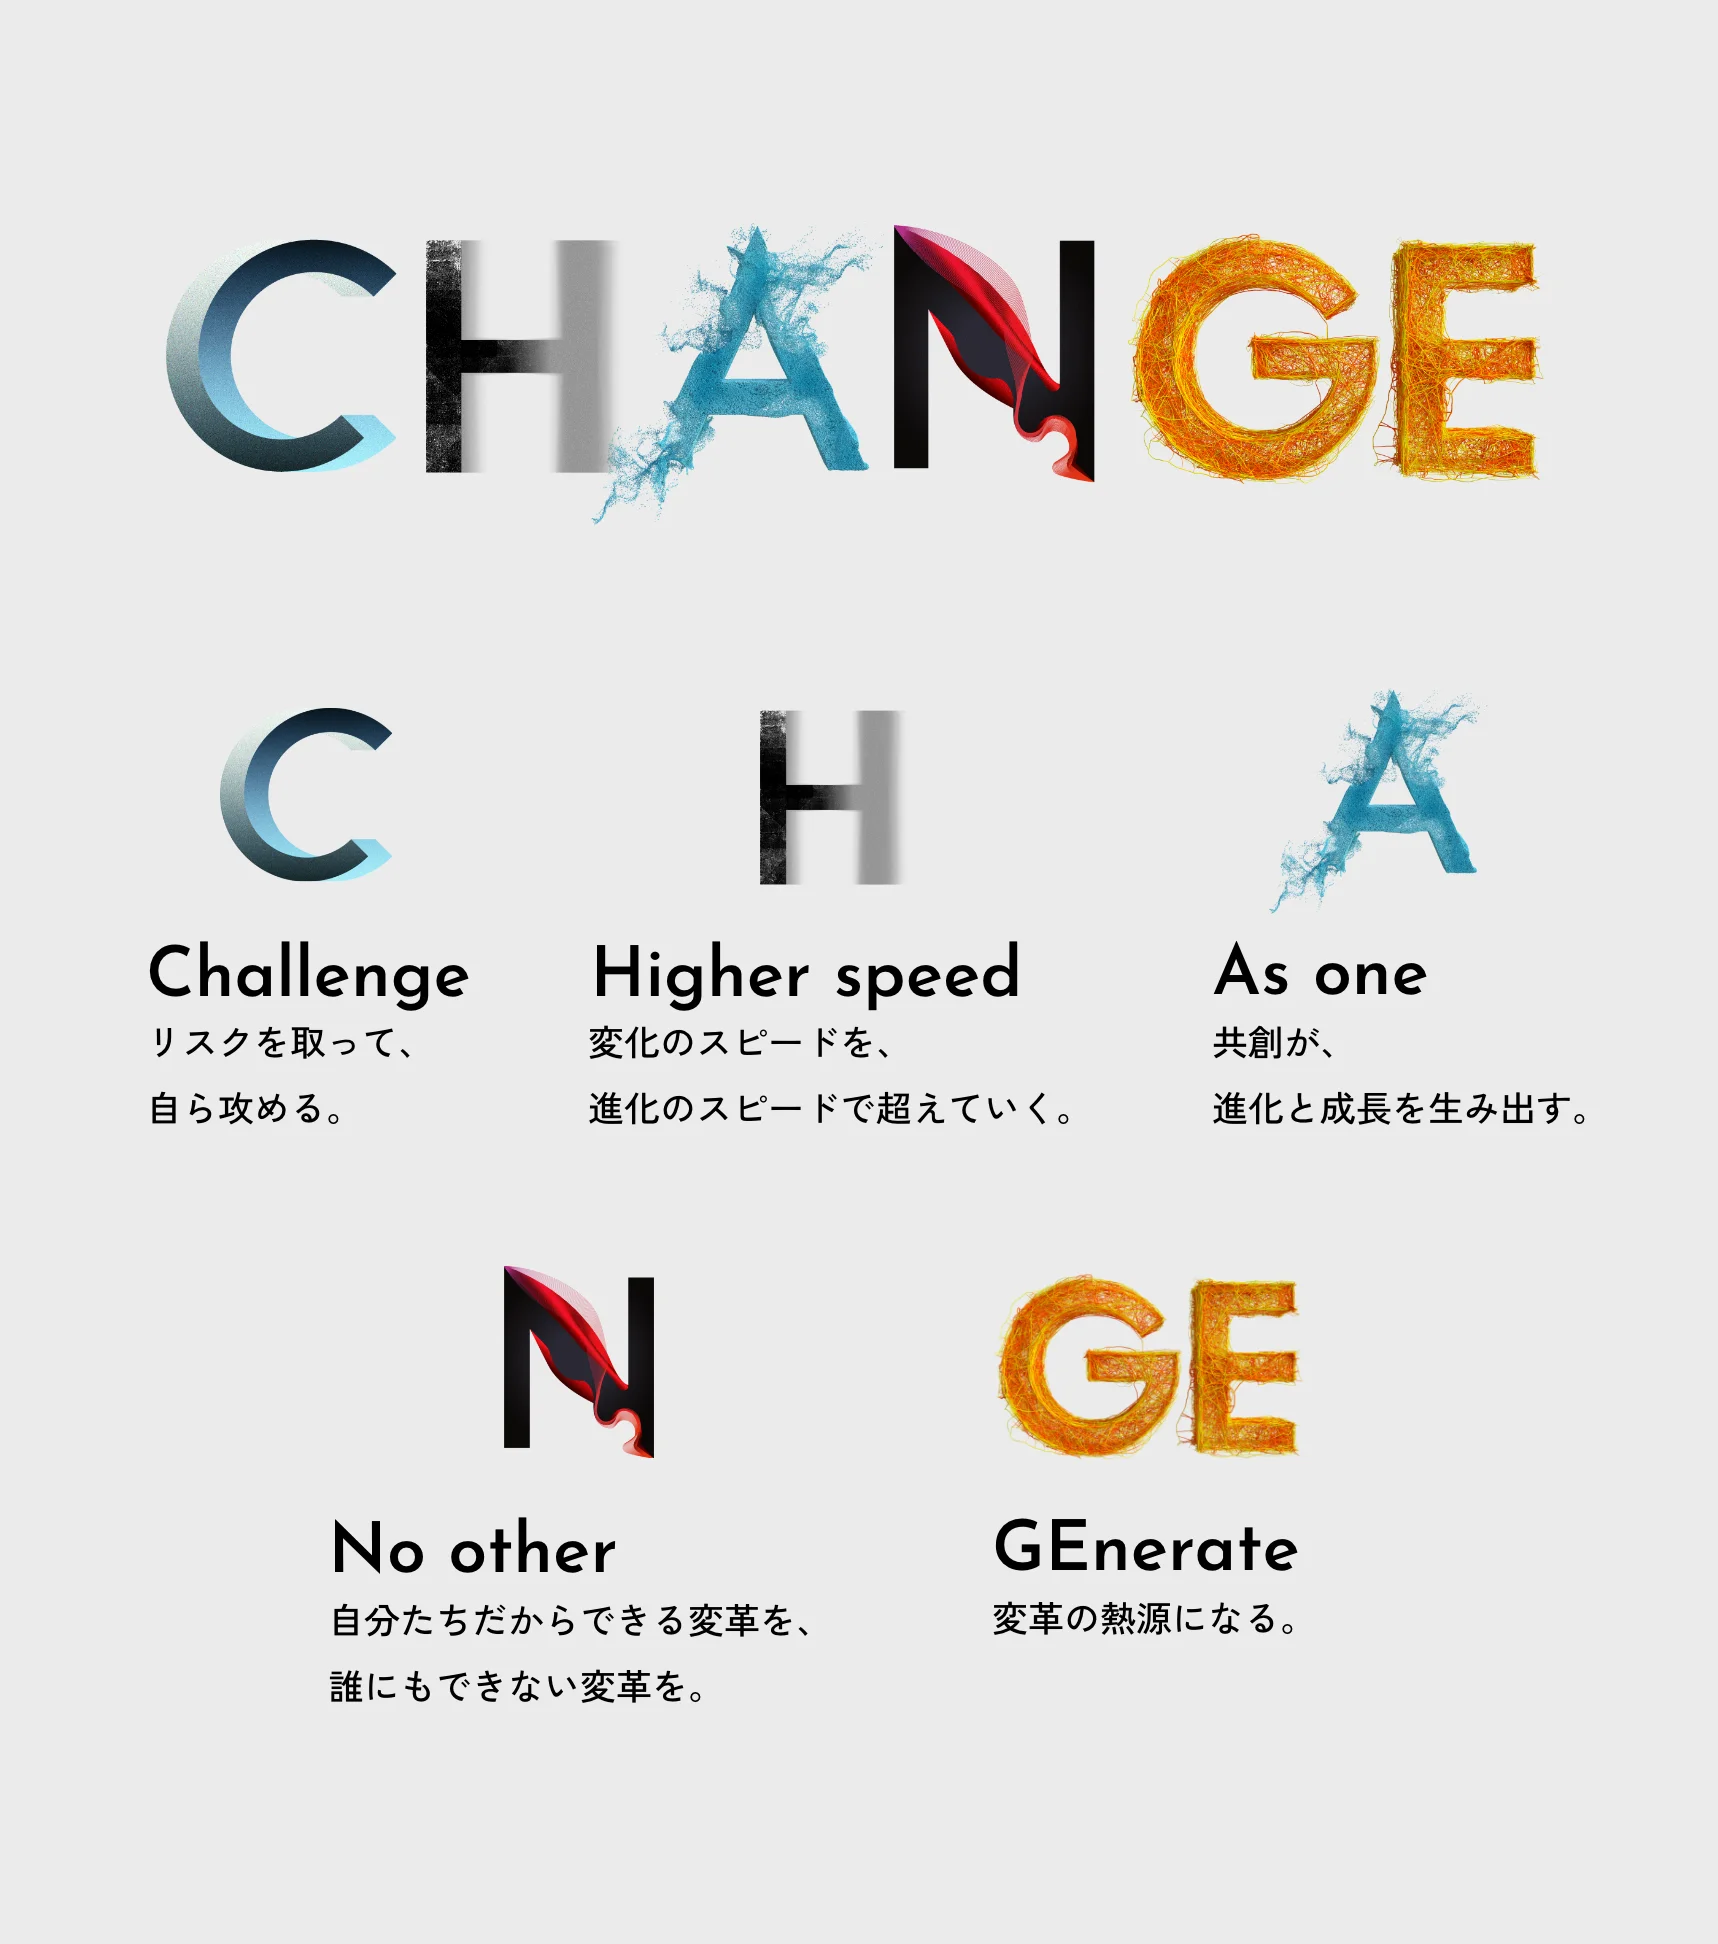 CHANGE C Challenge リスクを取って、自ら攻める。 H Higher Speed 変化のスピードを、進化のスピードで超えていく。 A As one 共創が、進化と成長を生み出す。 N No other 自分たちだからできる変革を、誰にもできない変革を。 GE GEnerate 変革の熱源になる。